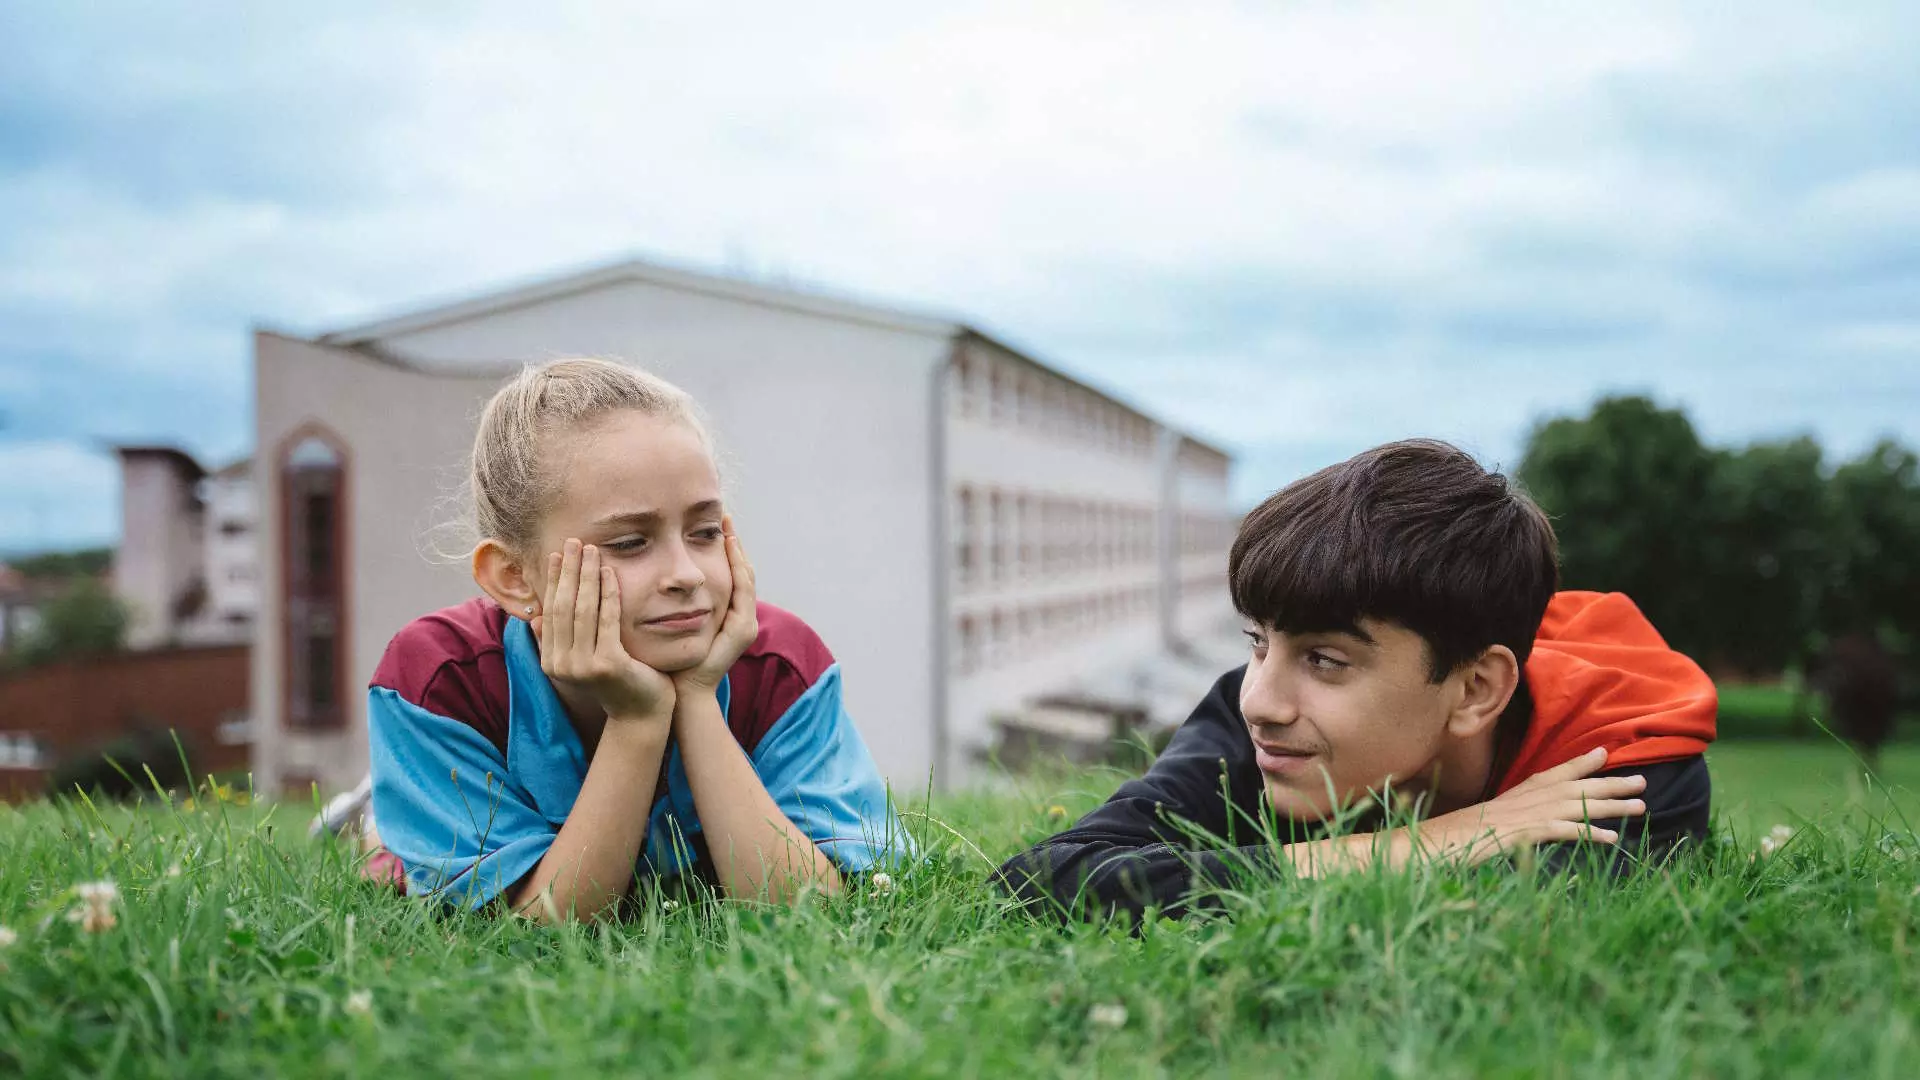 Halvnært. En ung jente og en ung gutt ligger på magen og slapper av på en grønn gressplen. De ser på hverandre. I bakgrunnen kan vi skimte et leilighetskompleks. Det er blå himmel med lette skyer.